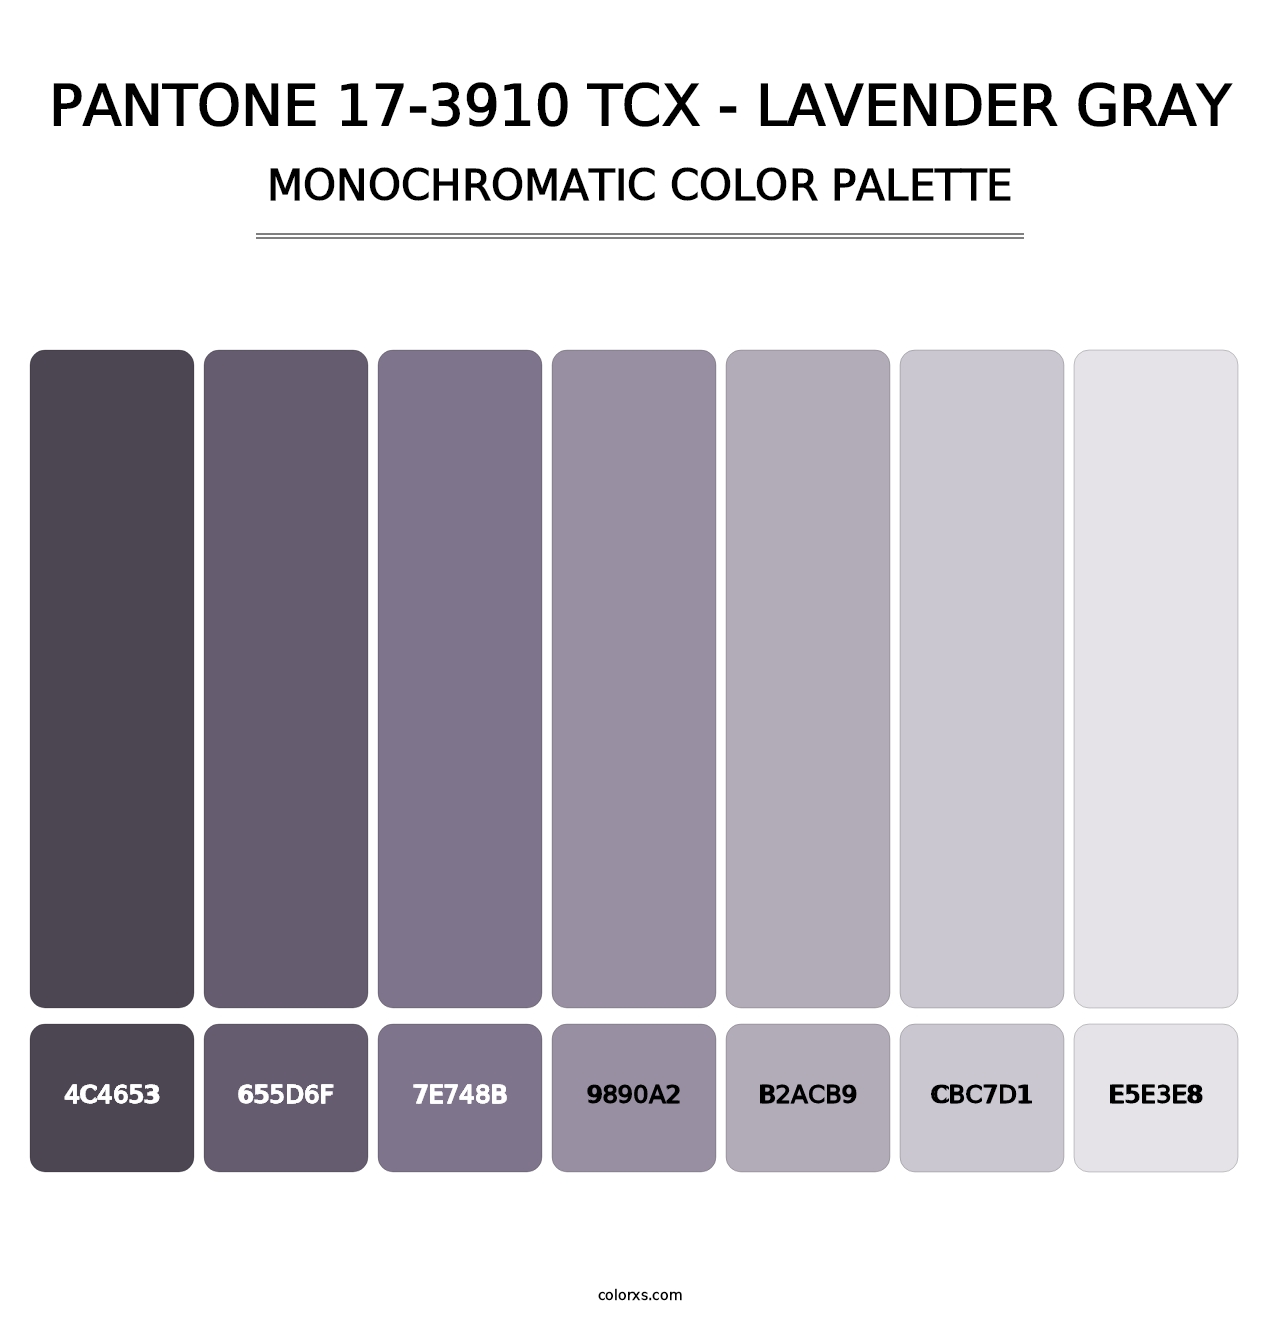 PANTONE 17-3910 TCX - Lavender Gray - Monochromatic Color Palette